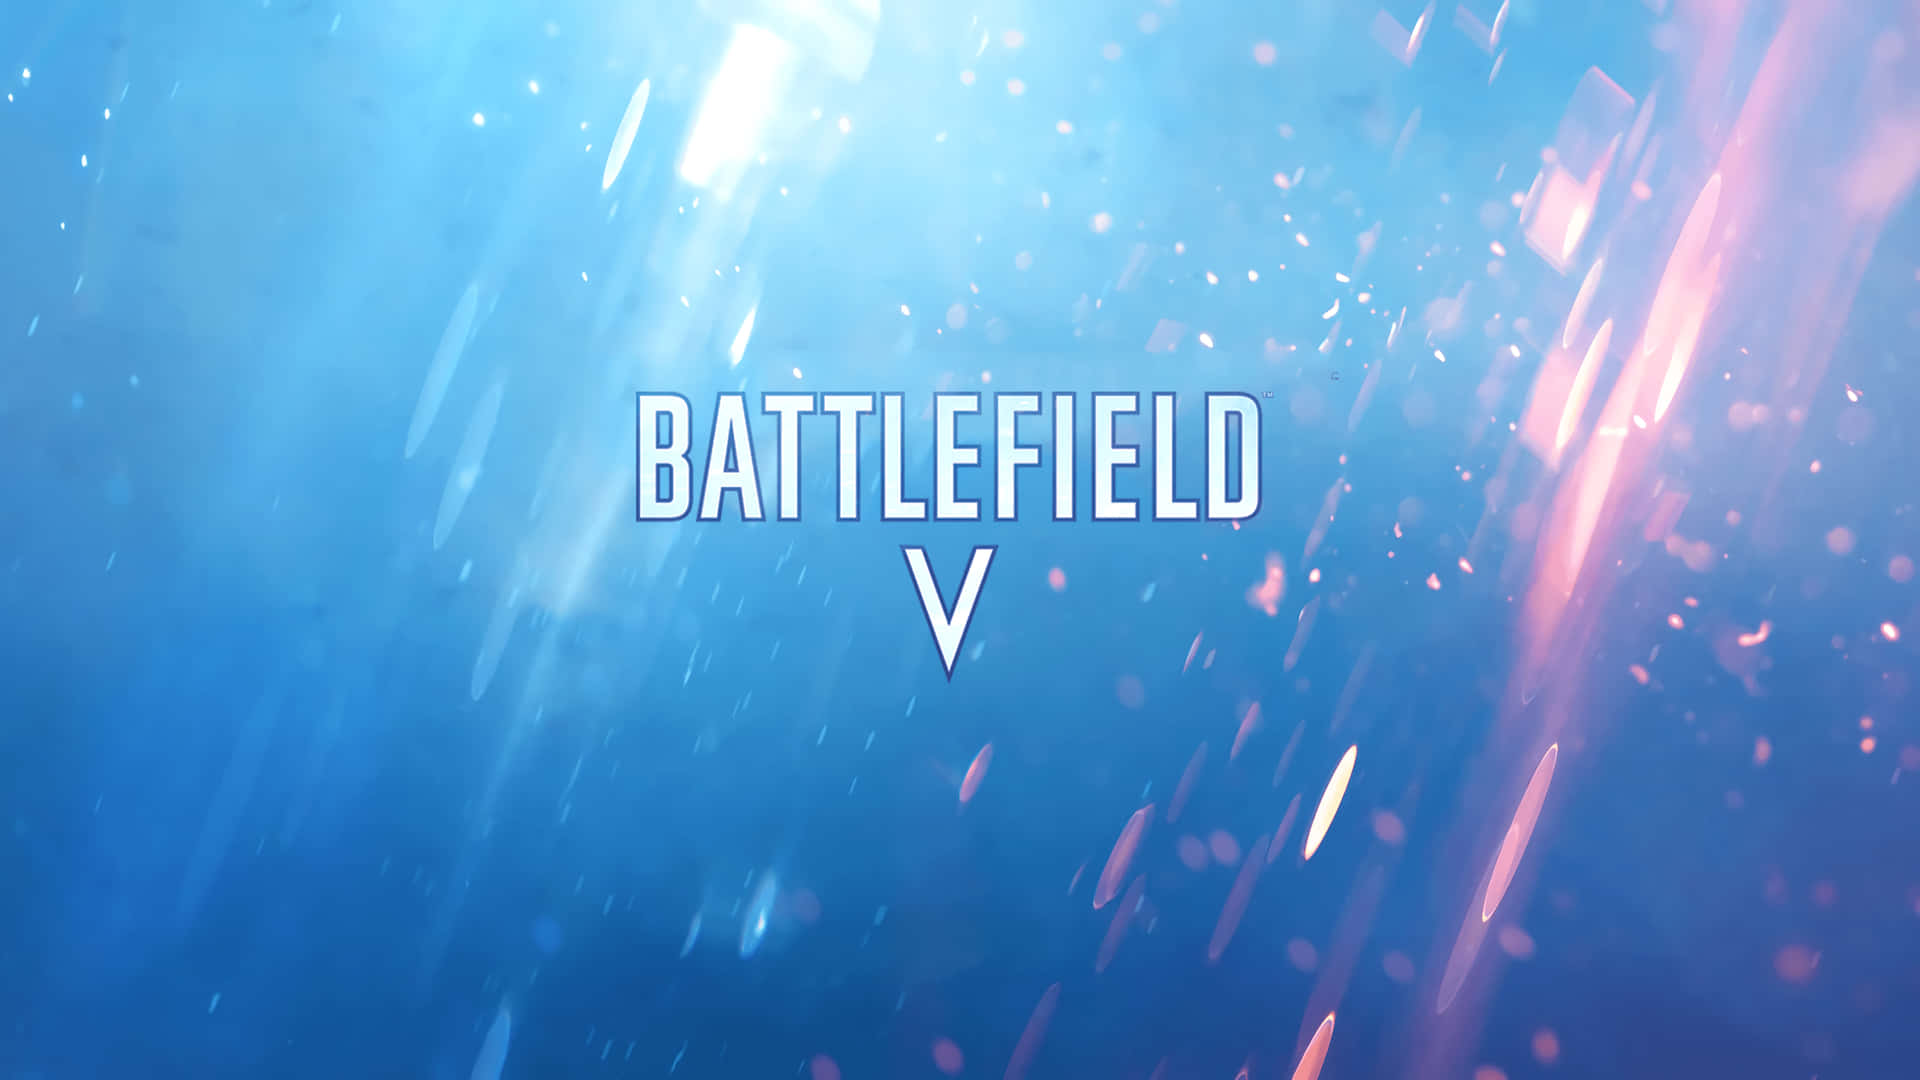 Battlefieldv - Ein Blauer Hintergrund Mit Den Worten 